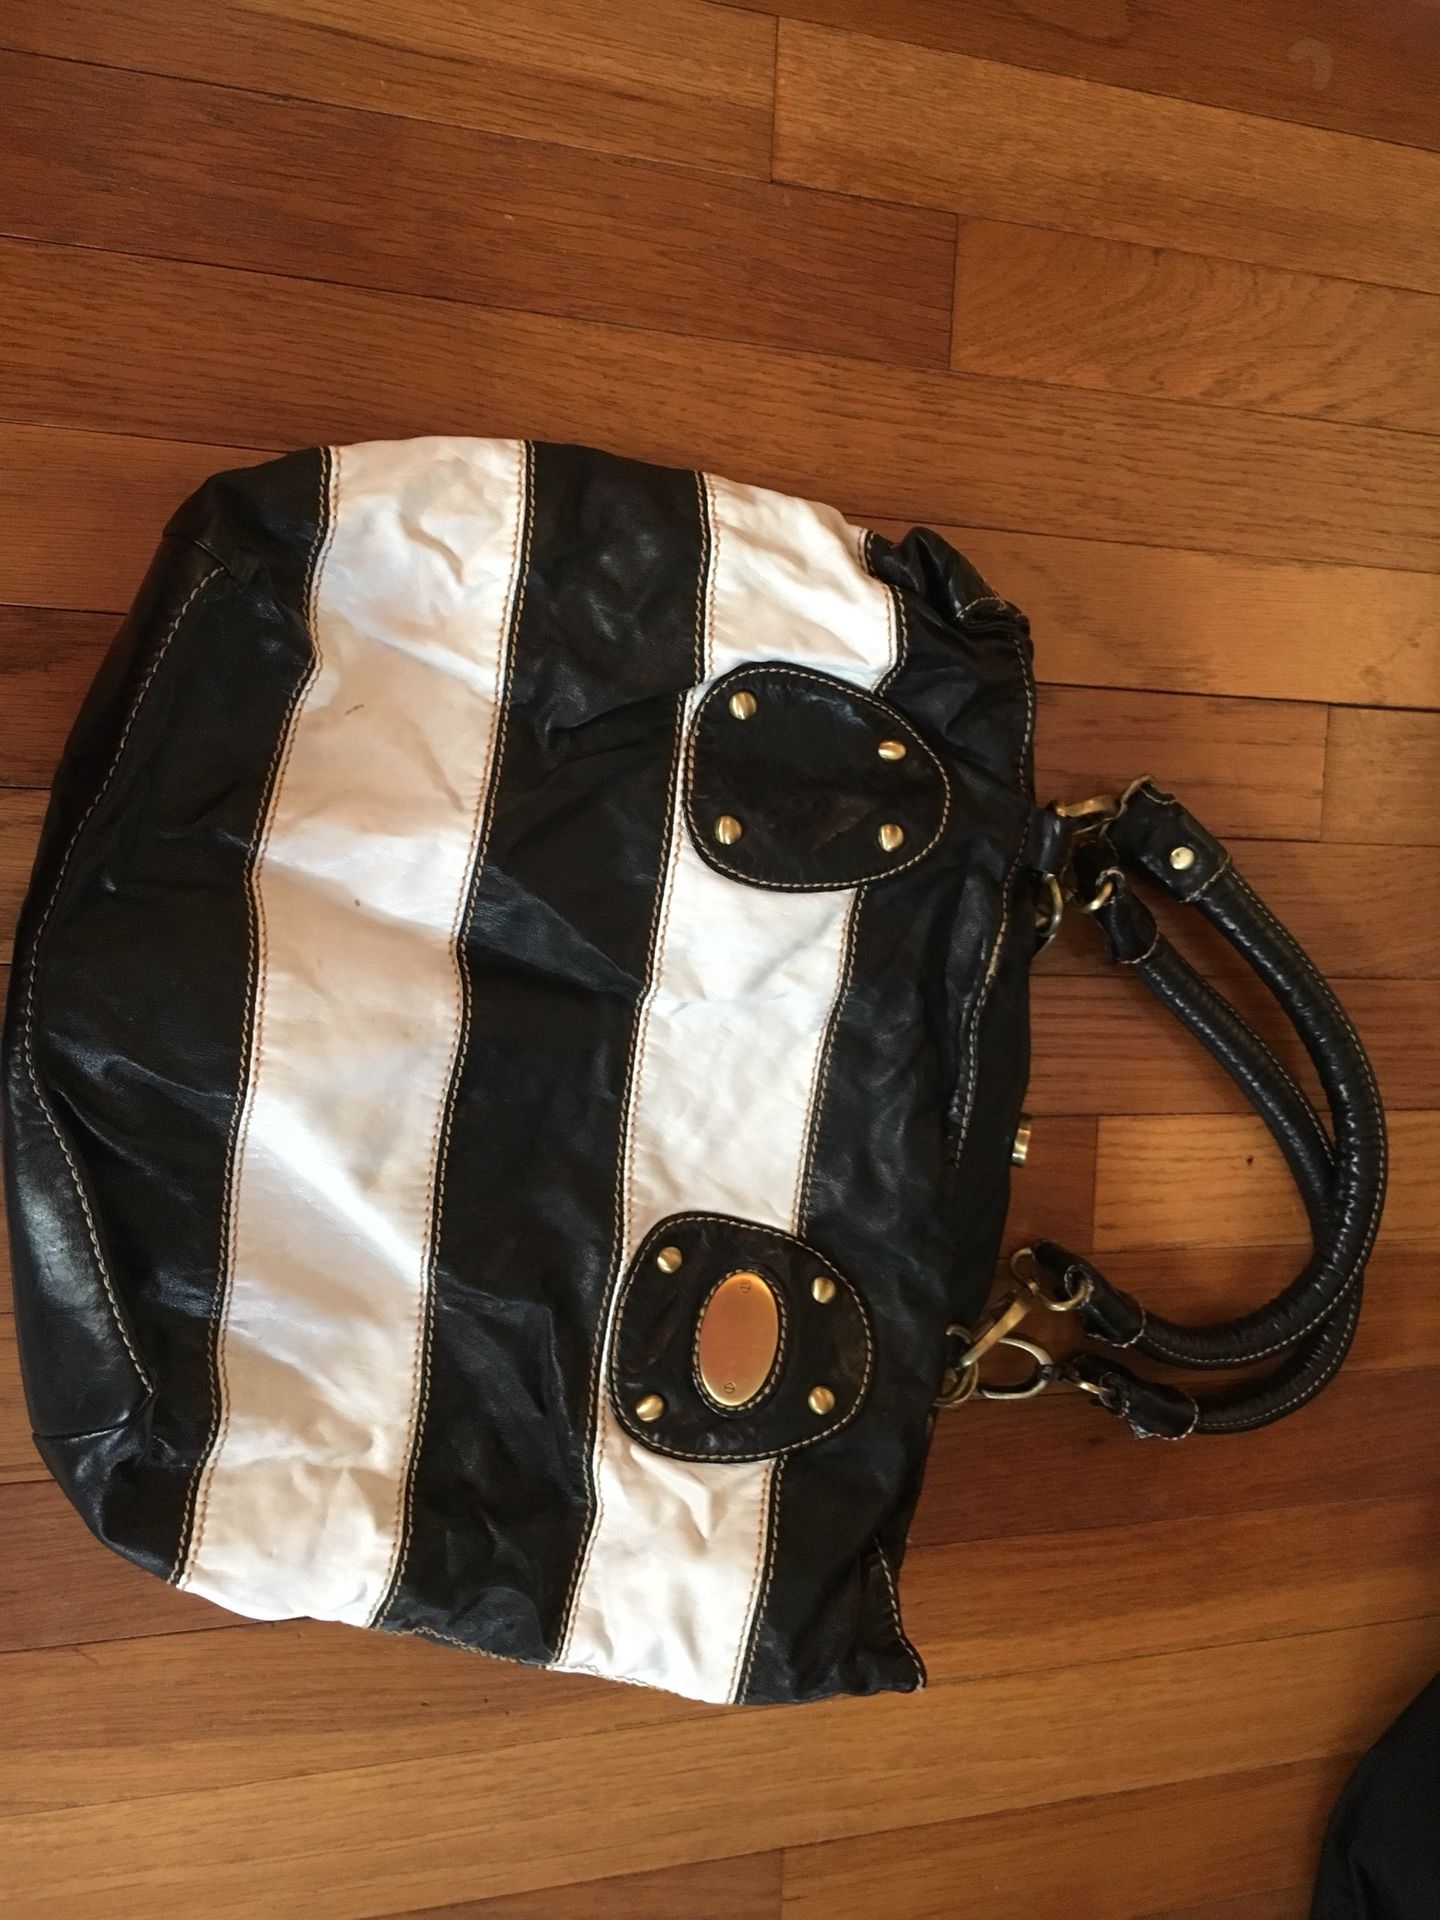 Black and White Striped purse